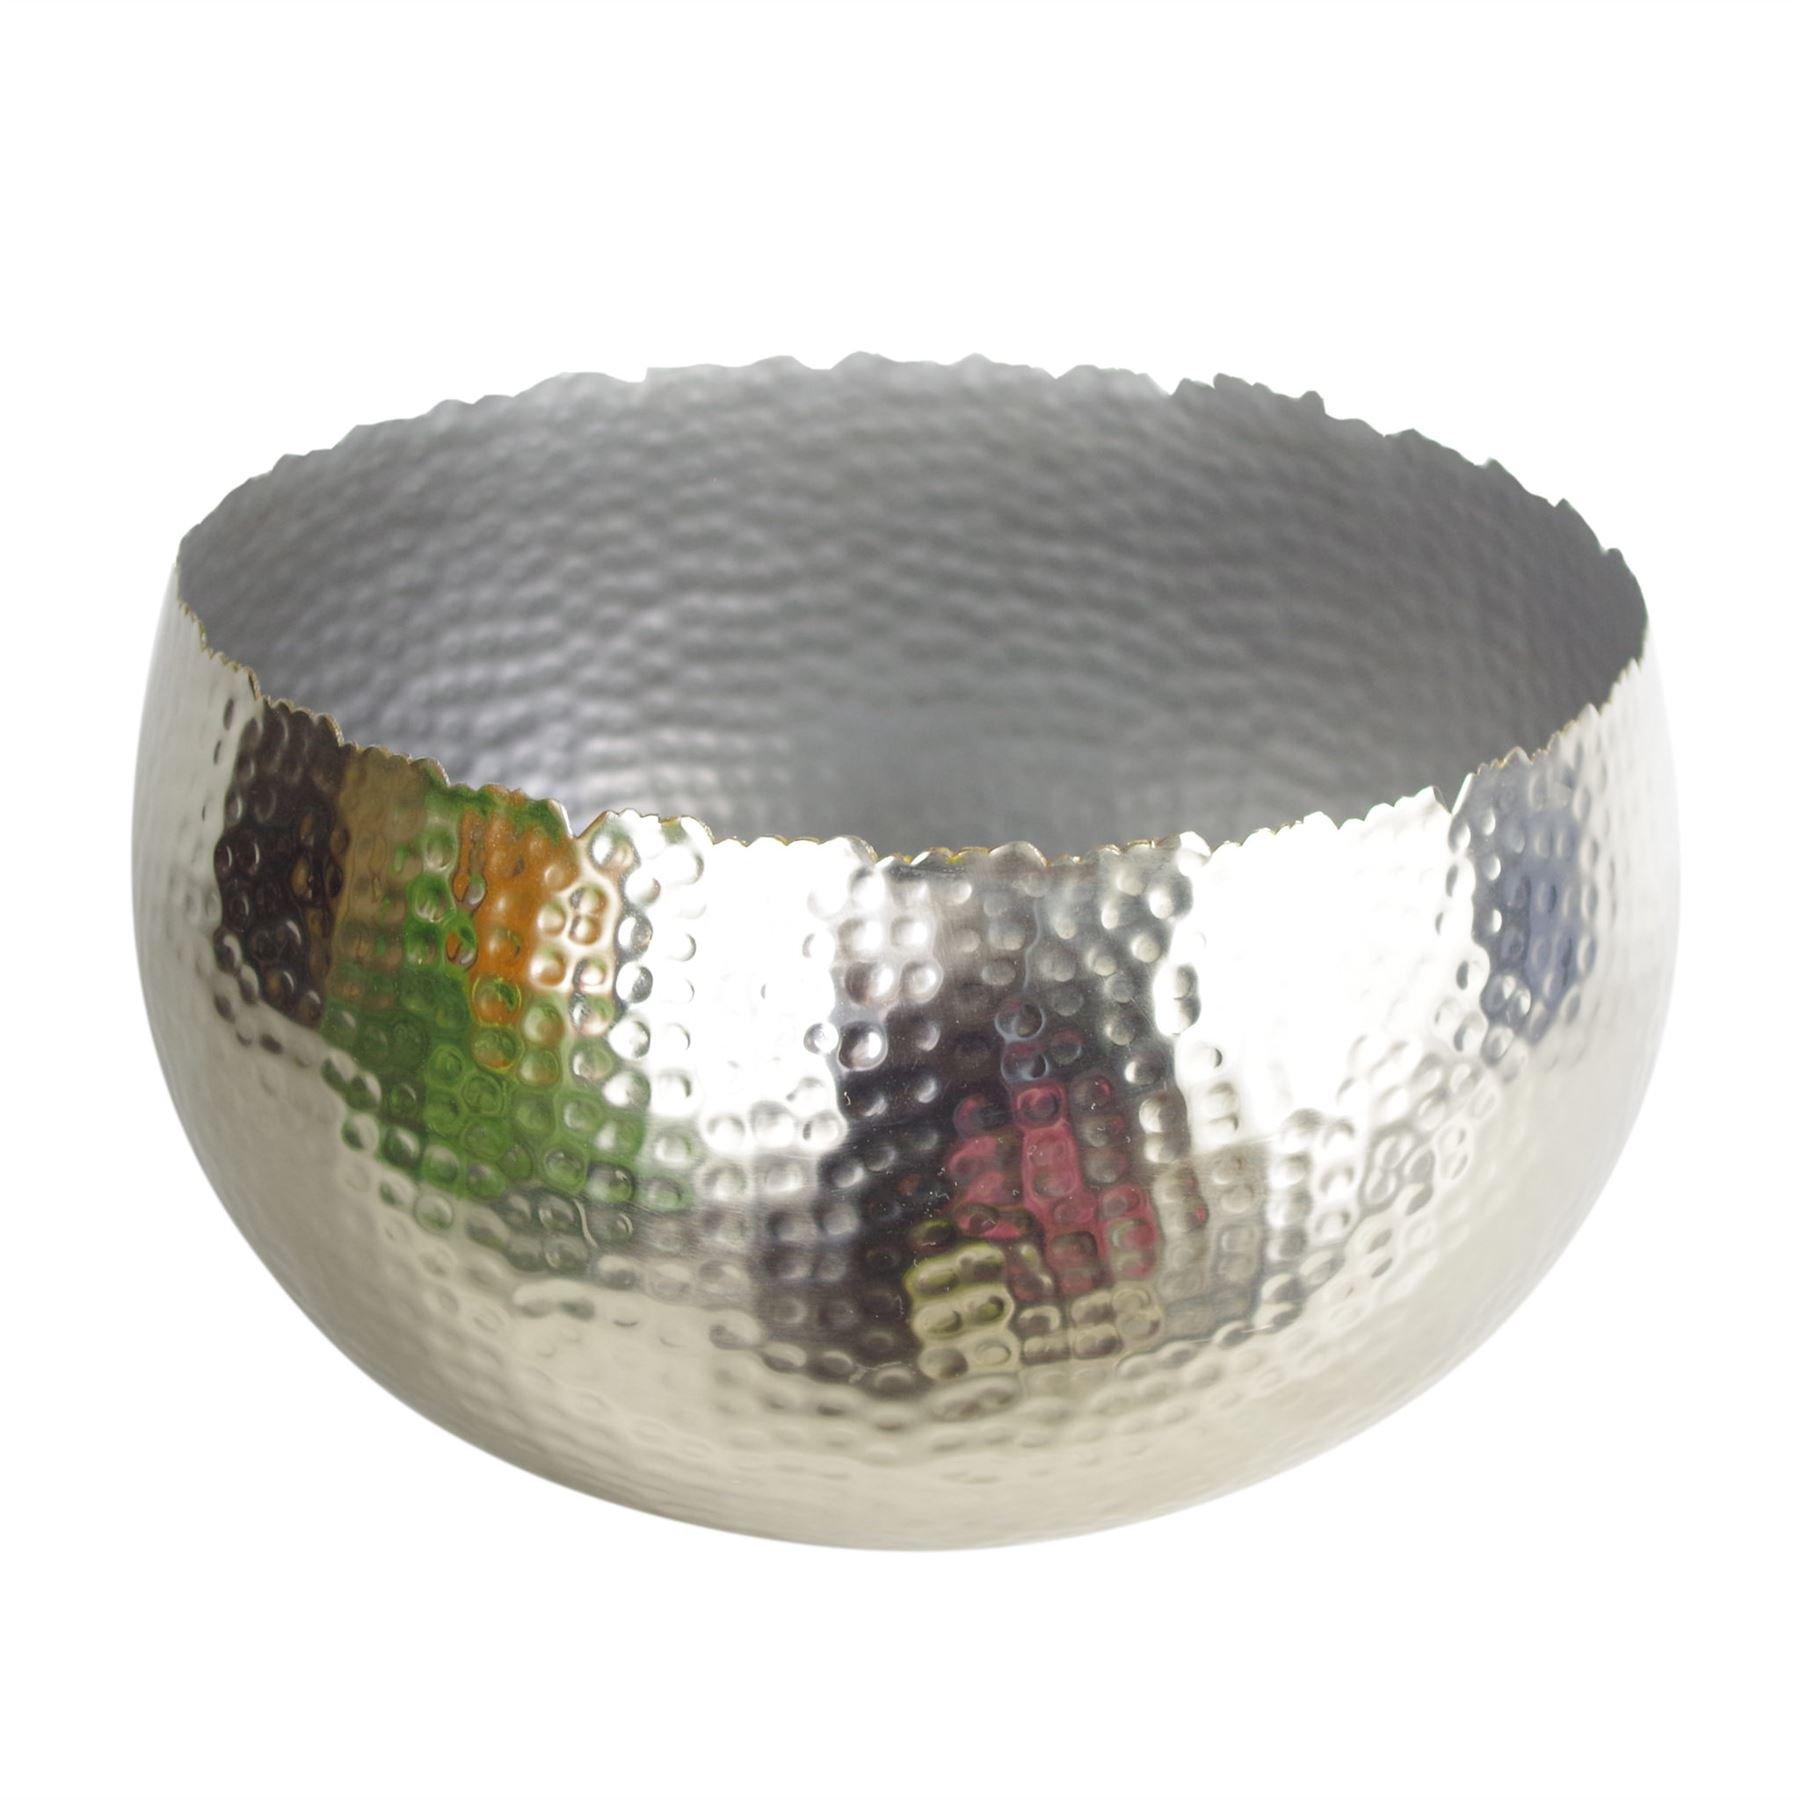 XL Metal Bowl 32 x 20cm Hammered Silver Colour - Curvy Edge